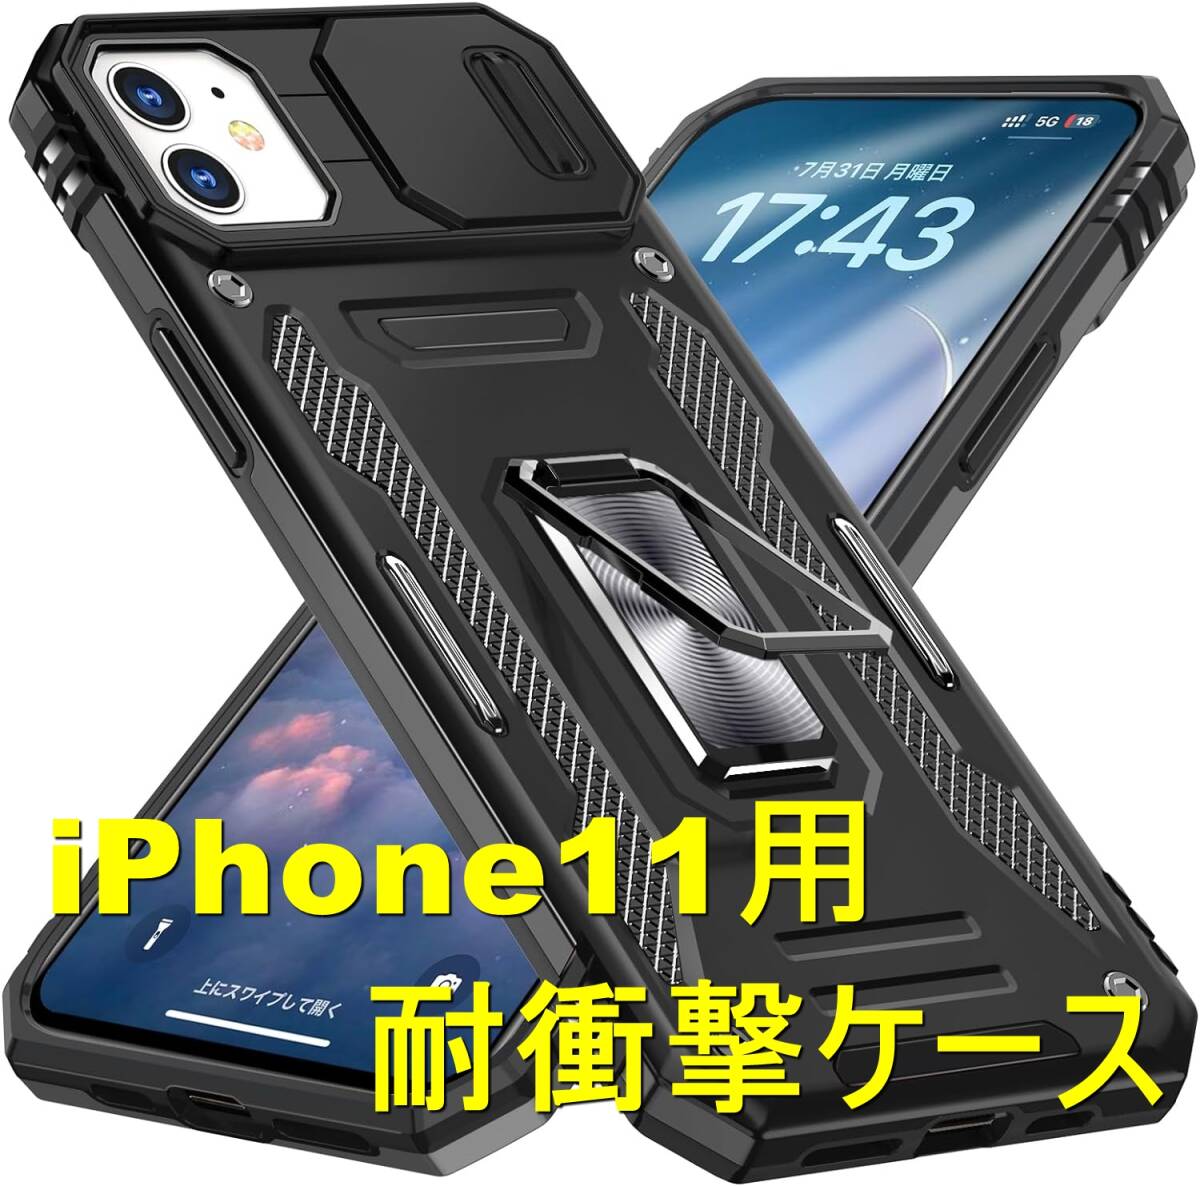 ★☆iPhone11 用 ケース 衝撃吸収 スライド式レンズカバー ブラックの画像1